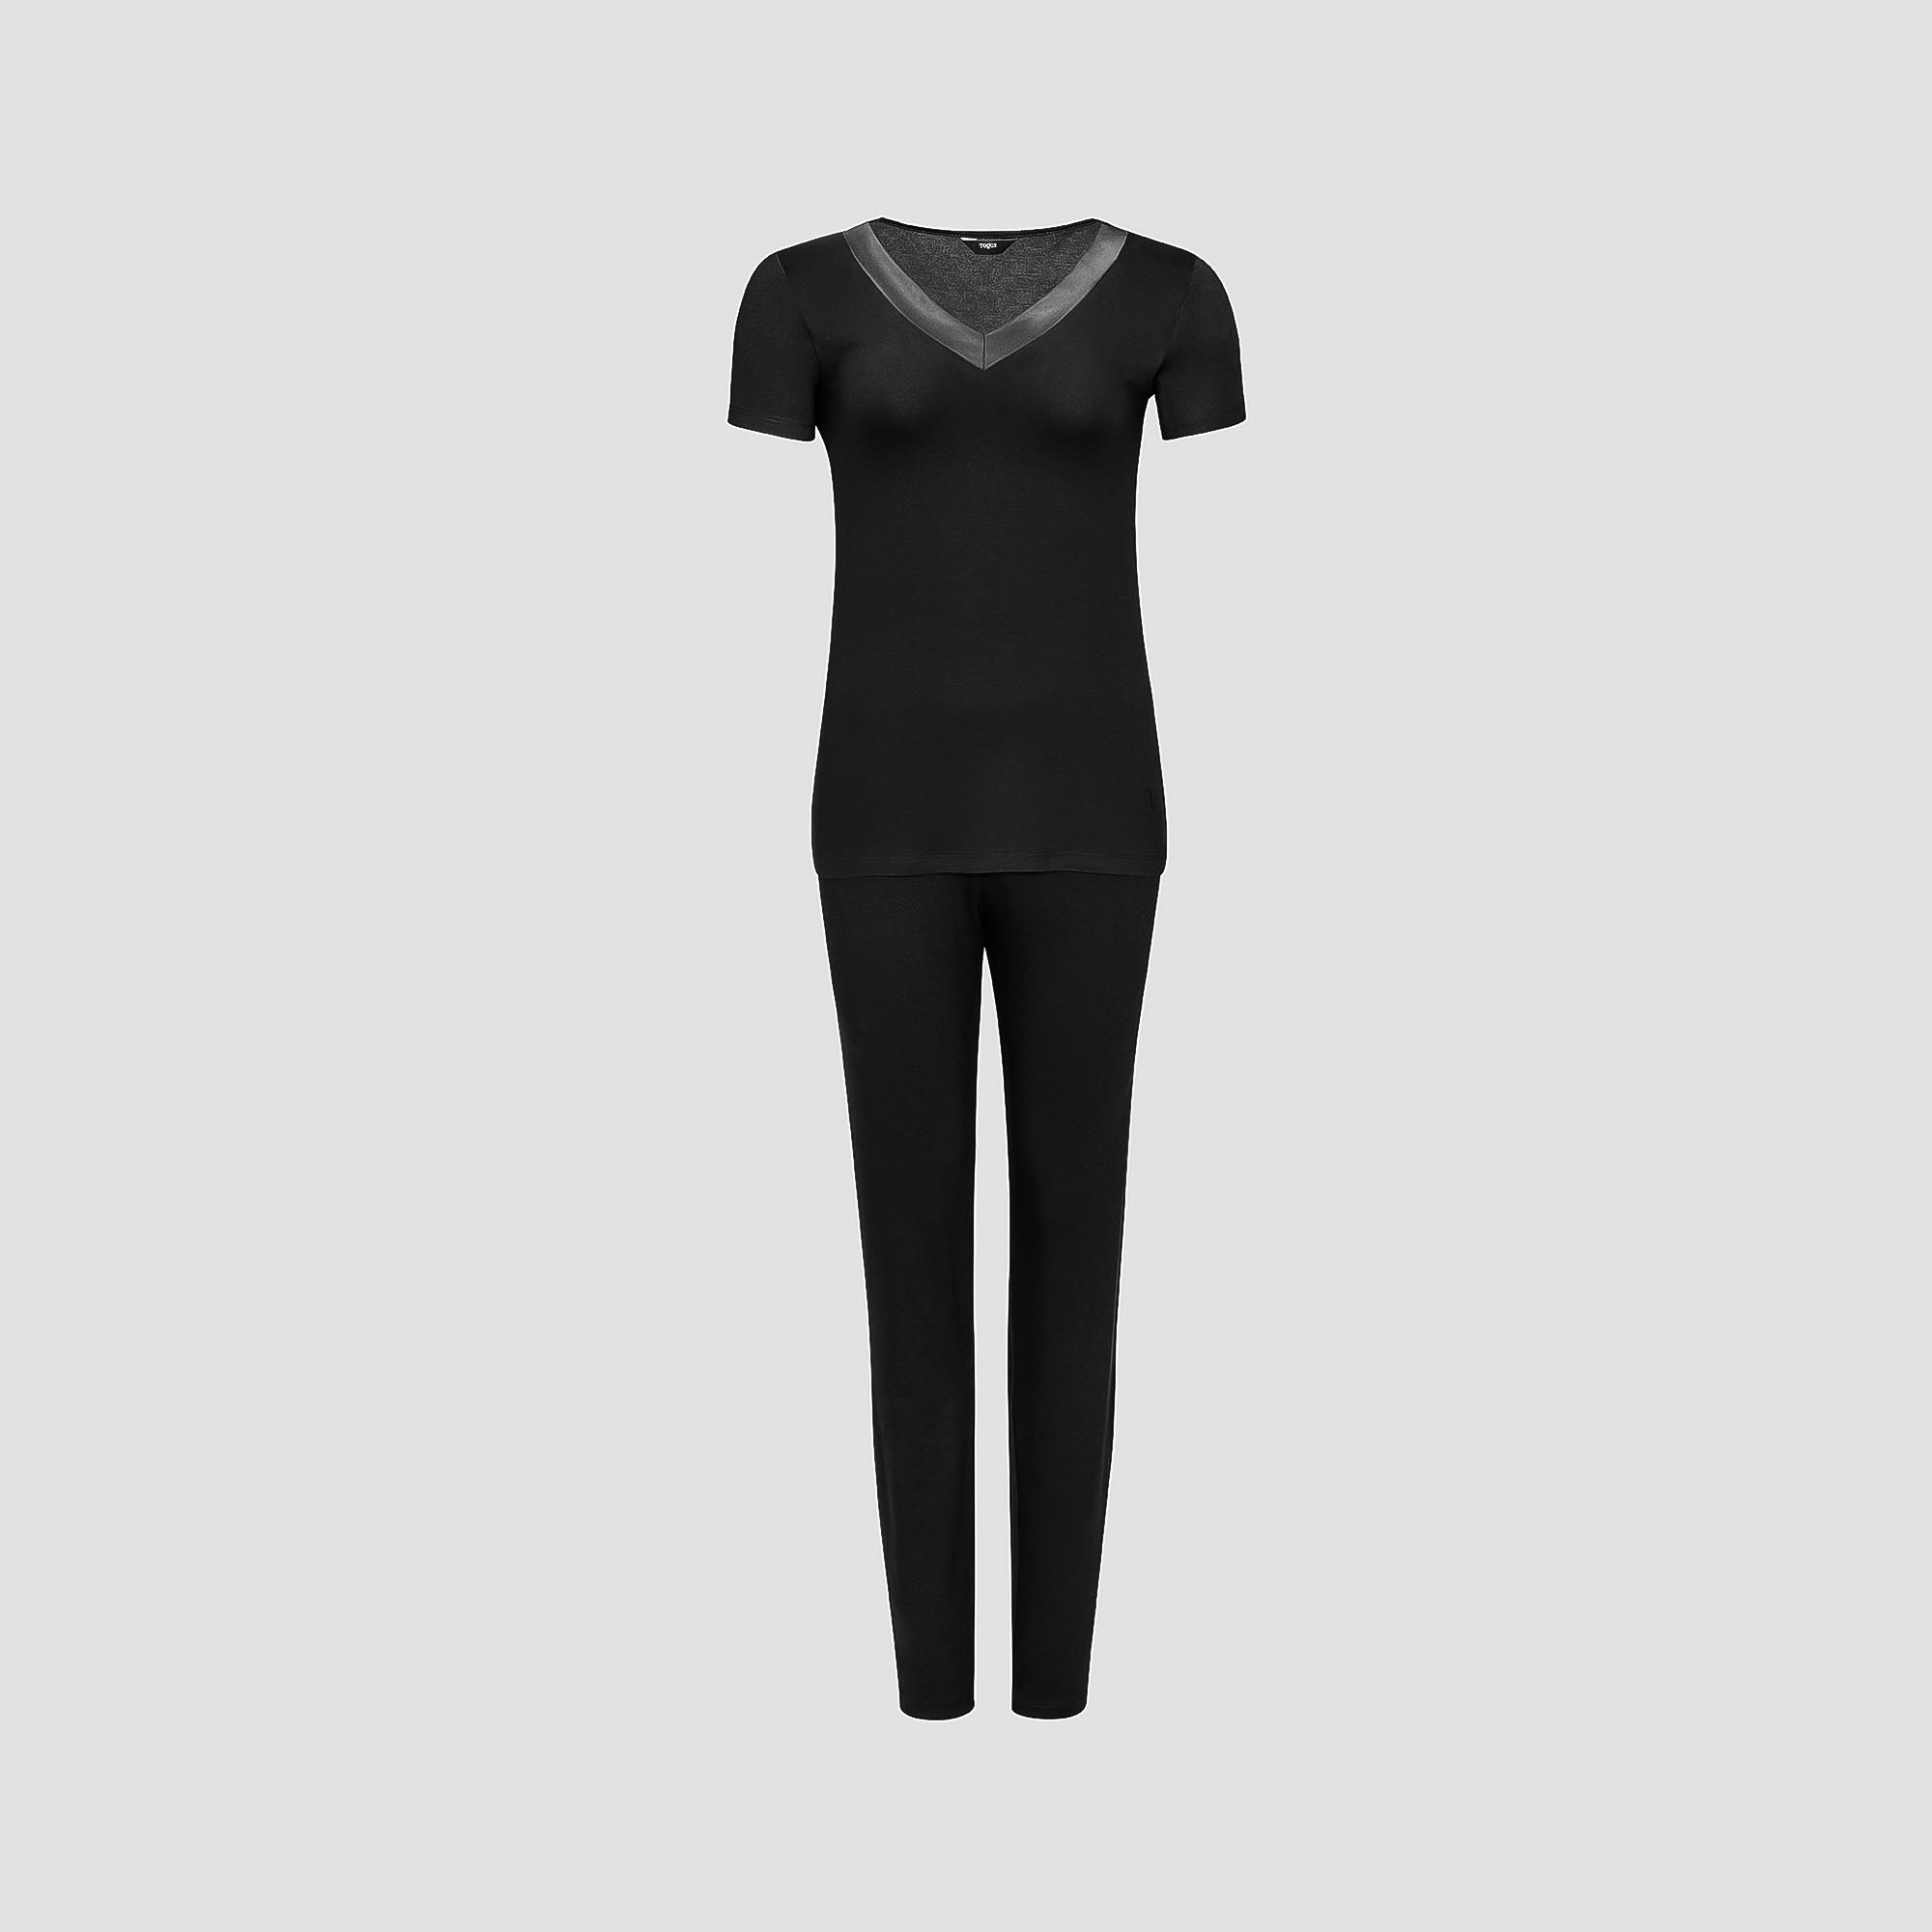 Пижама Togas Ингелла черная женская XL(50) 2 предмета